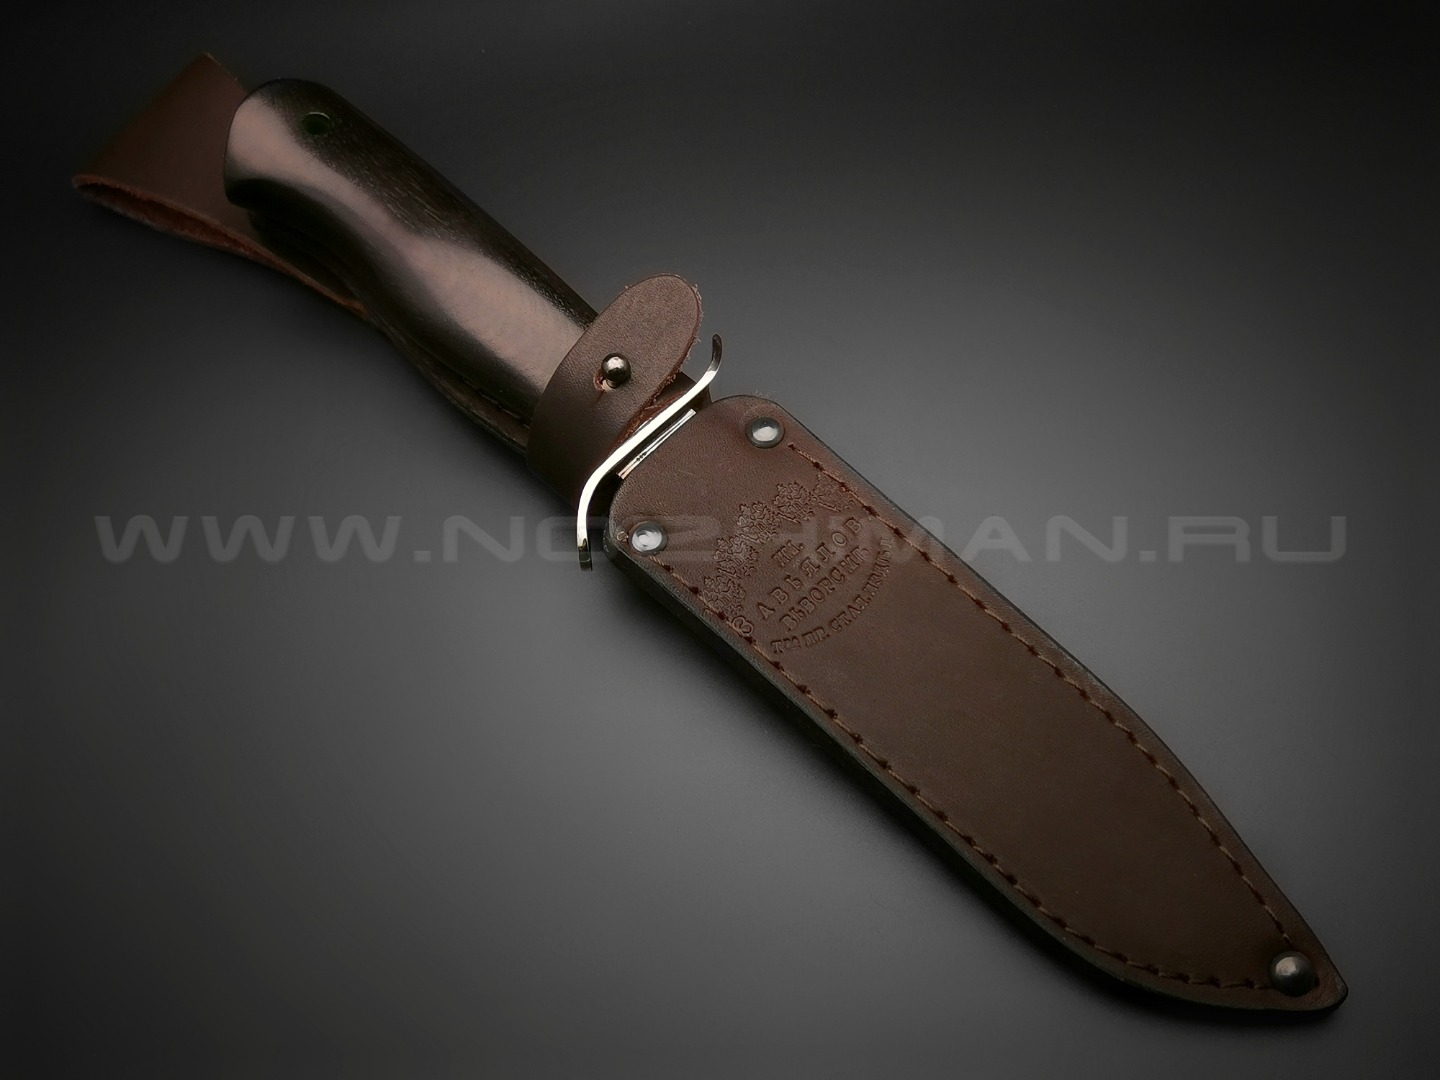 Нож разведчика "НР-40" сталь Х12МФ, рукоять дерево граб, мельхиор (Товарищество Завьялова)